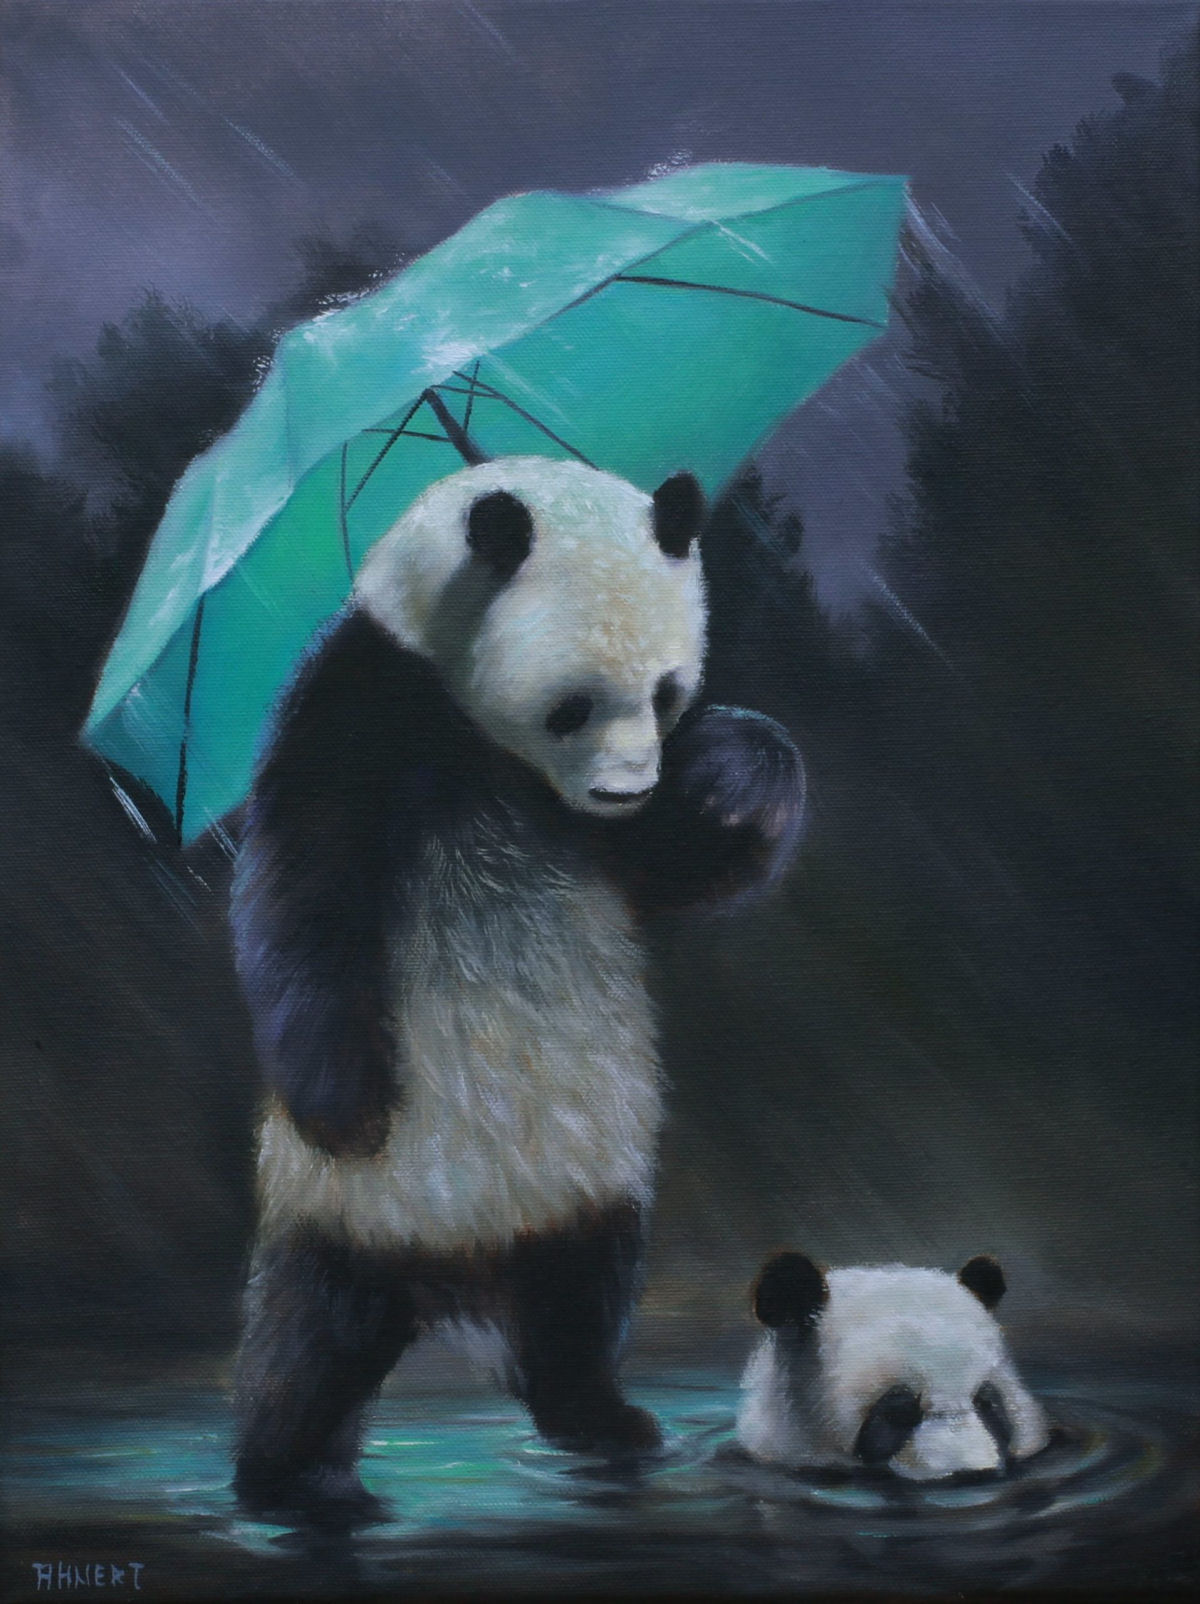 Pinturas a óleo antropomórficas emprestam narrativas satíricas para ursos 04